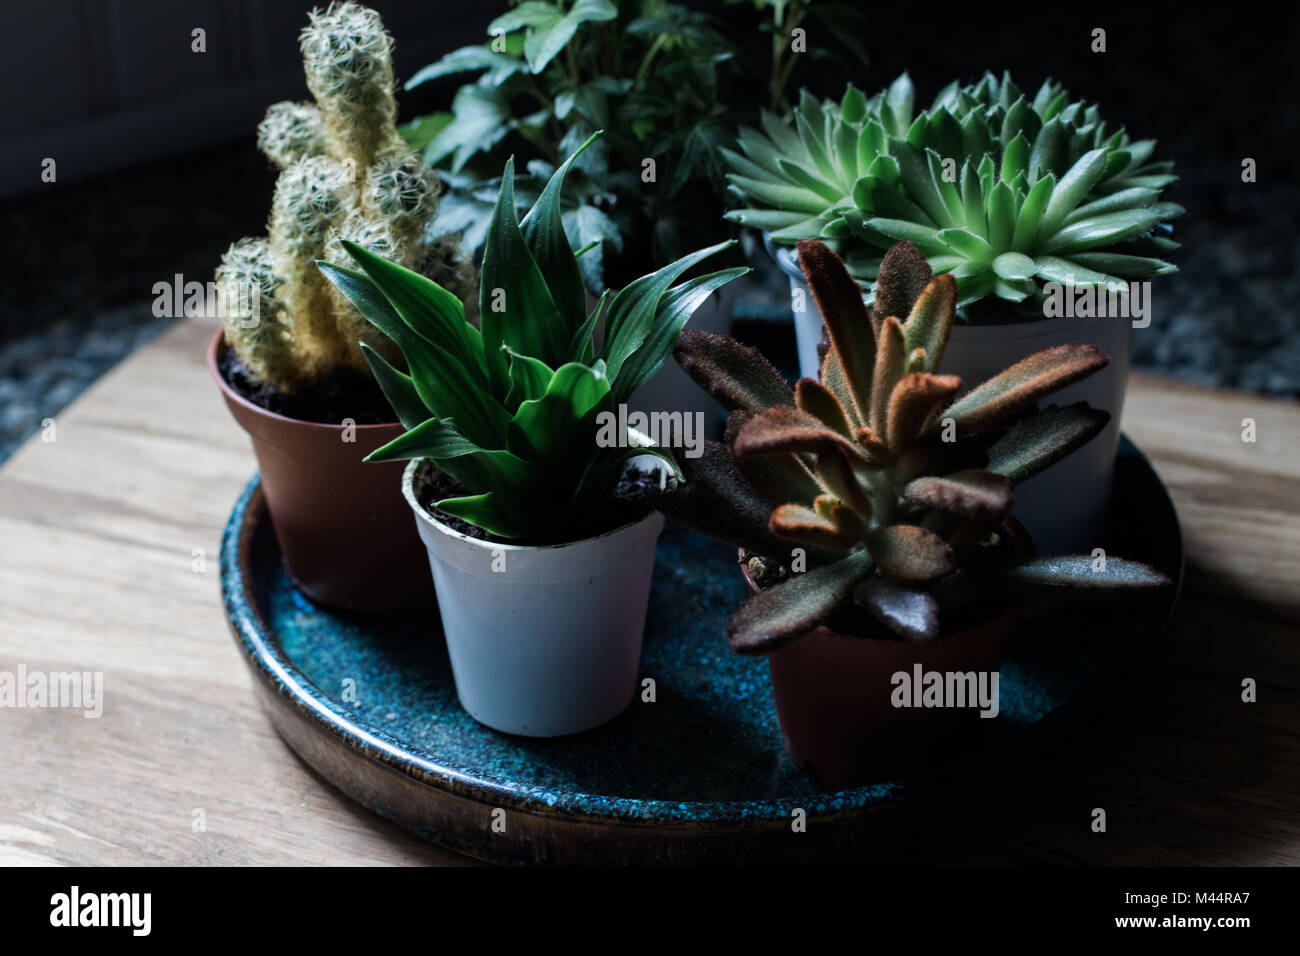 Suculentas y diminutas plantas de luz natural Foto de stock